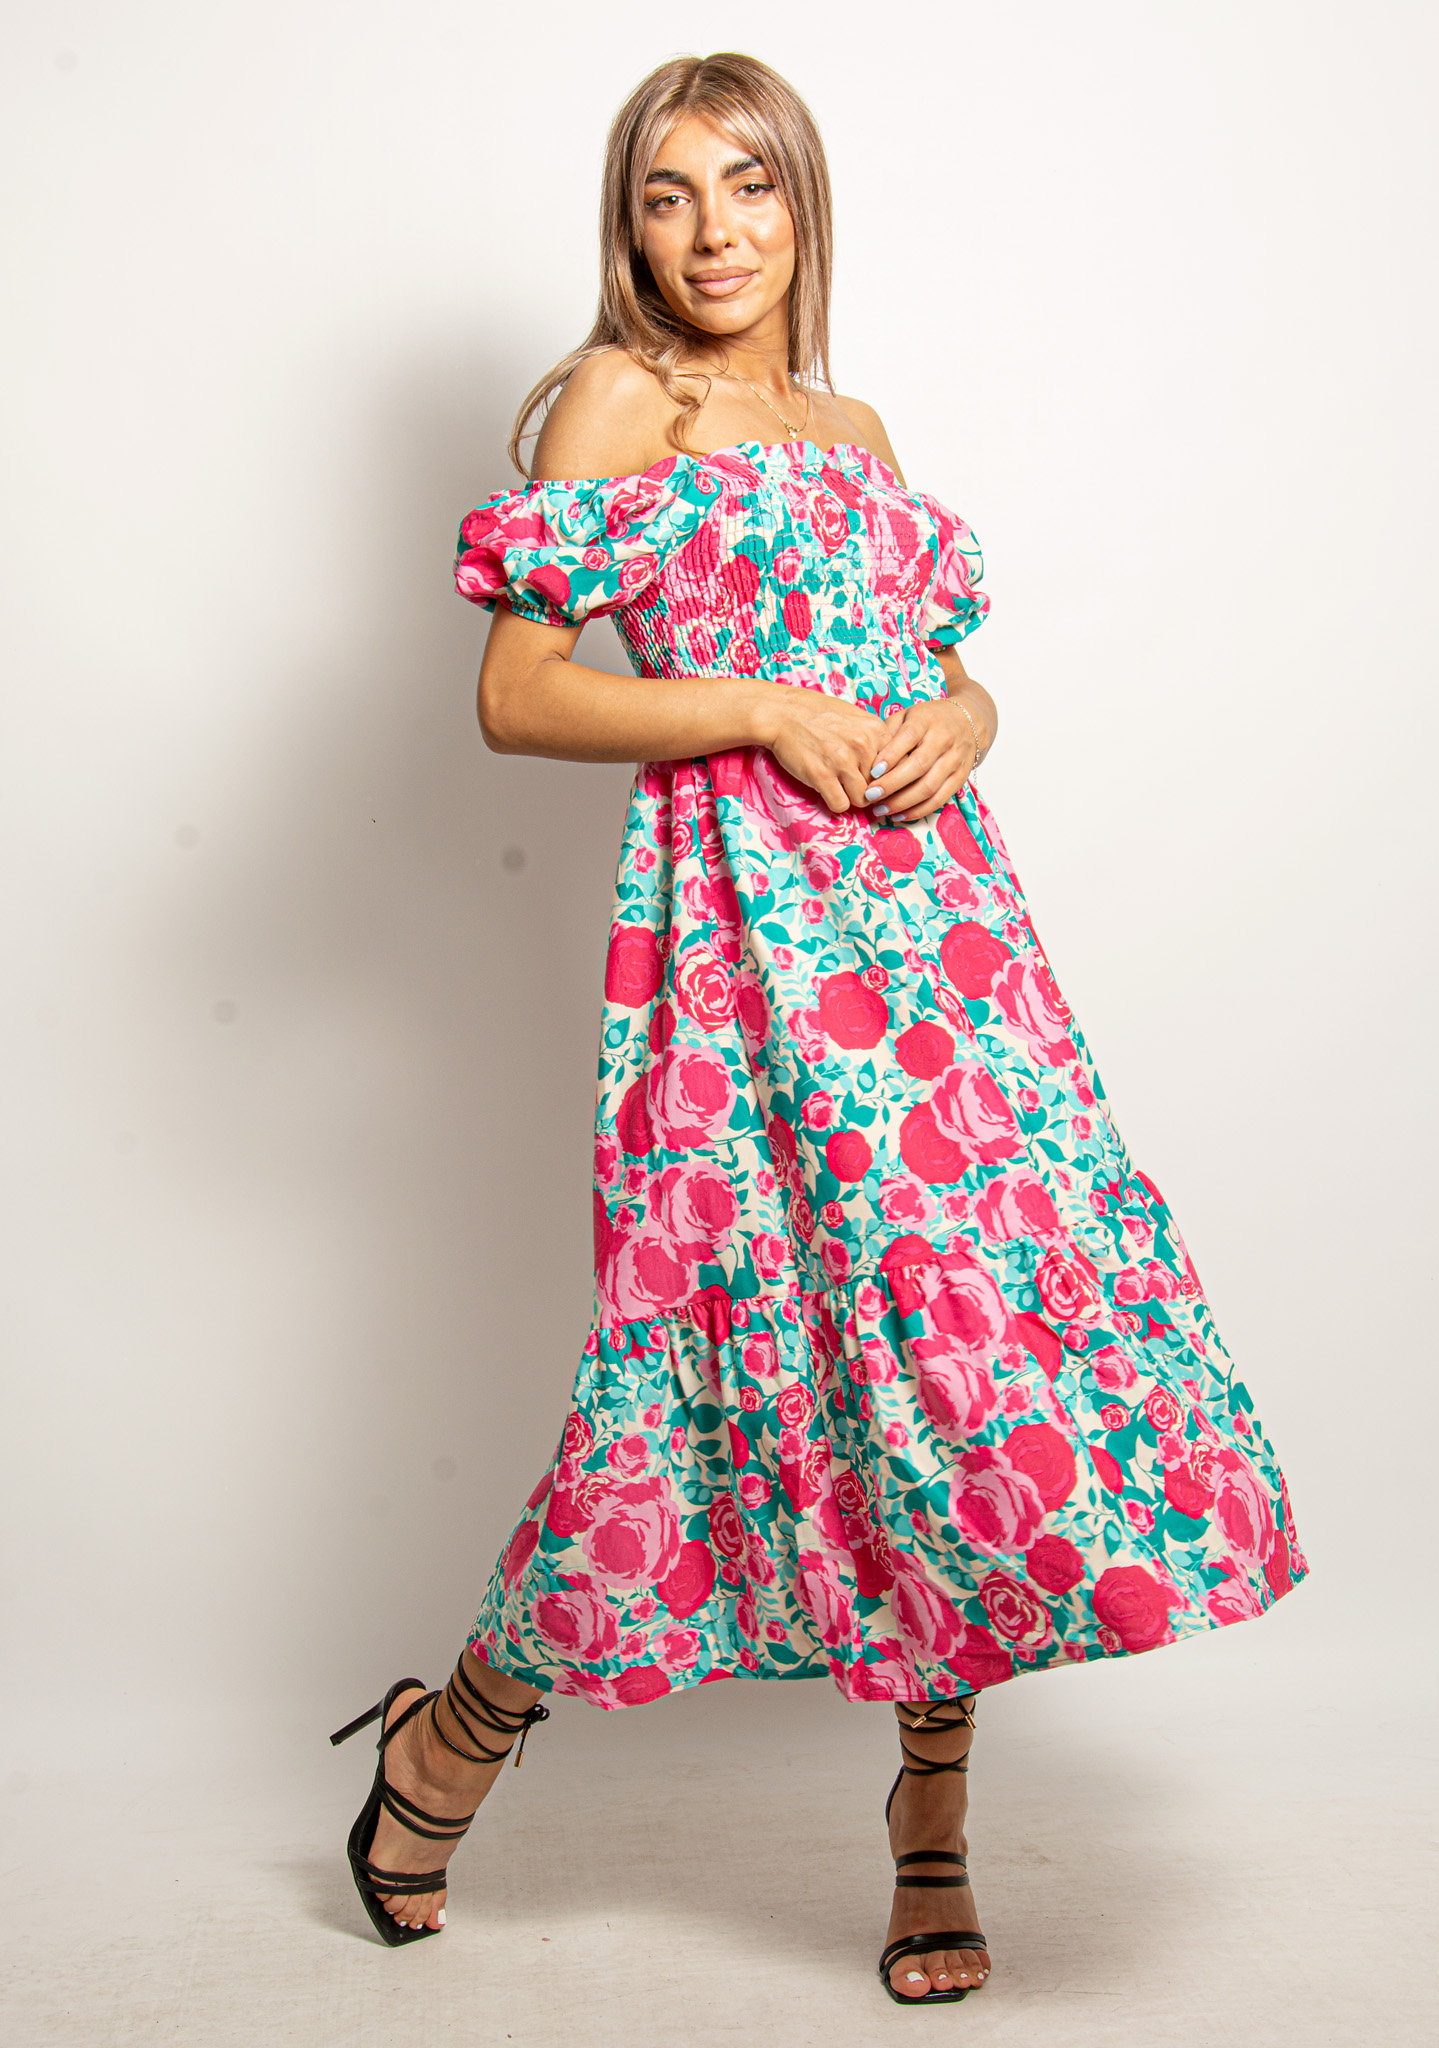 Φόρεμα Σφηκοφωλιά Floral Γαλάζιο-Φούξια – EllenBoutique